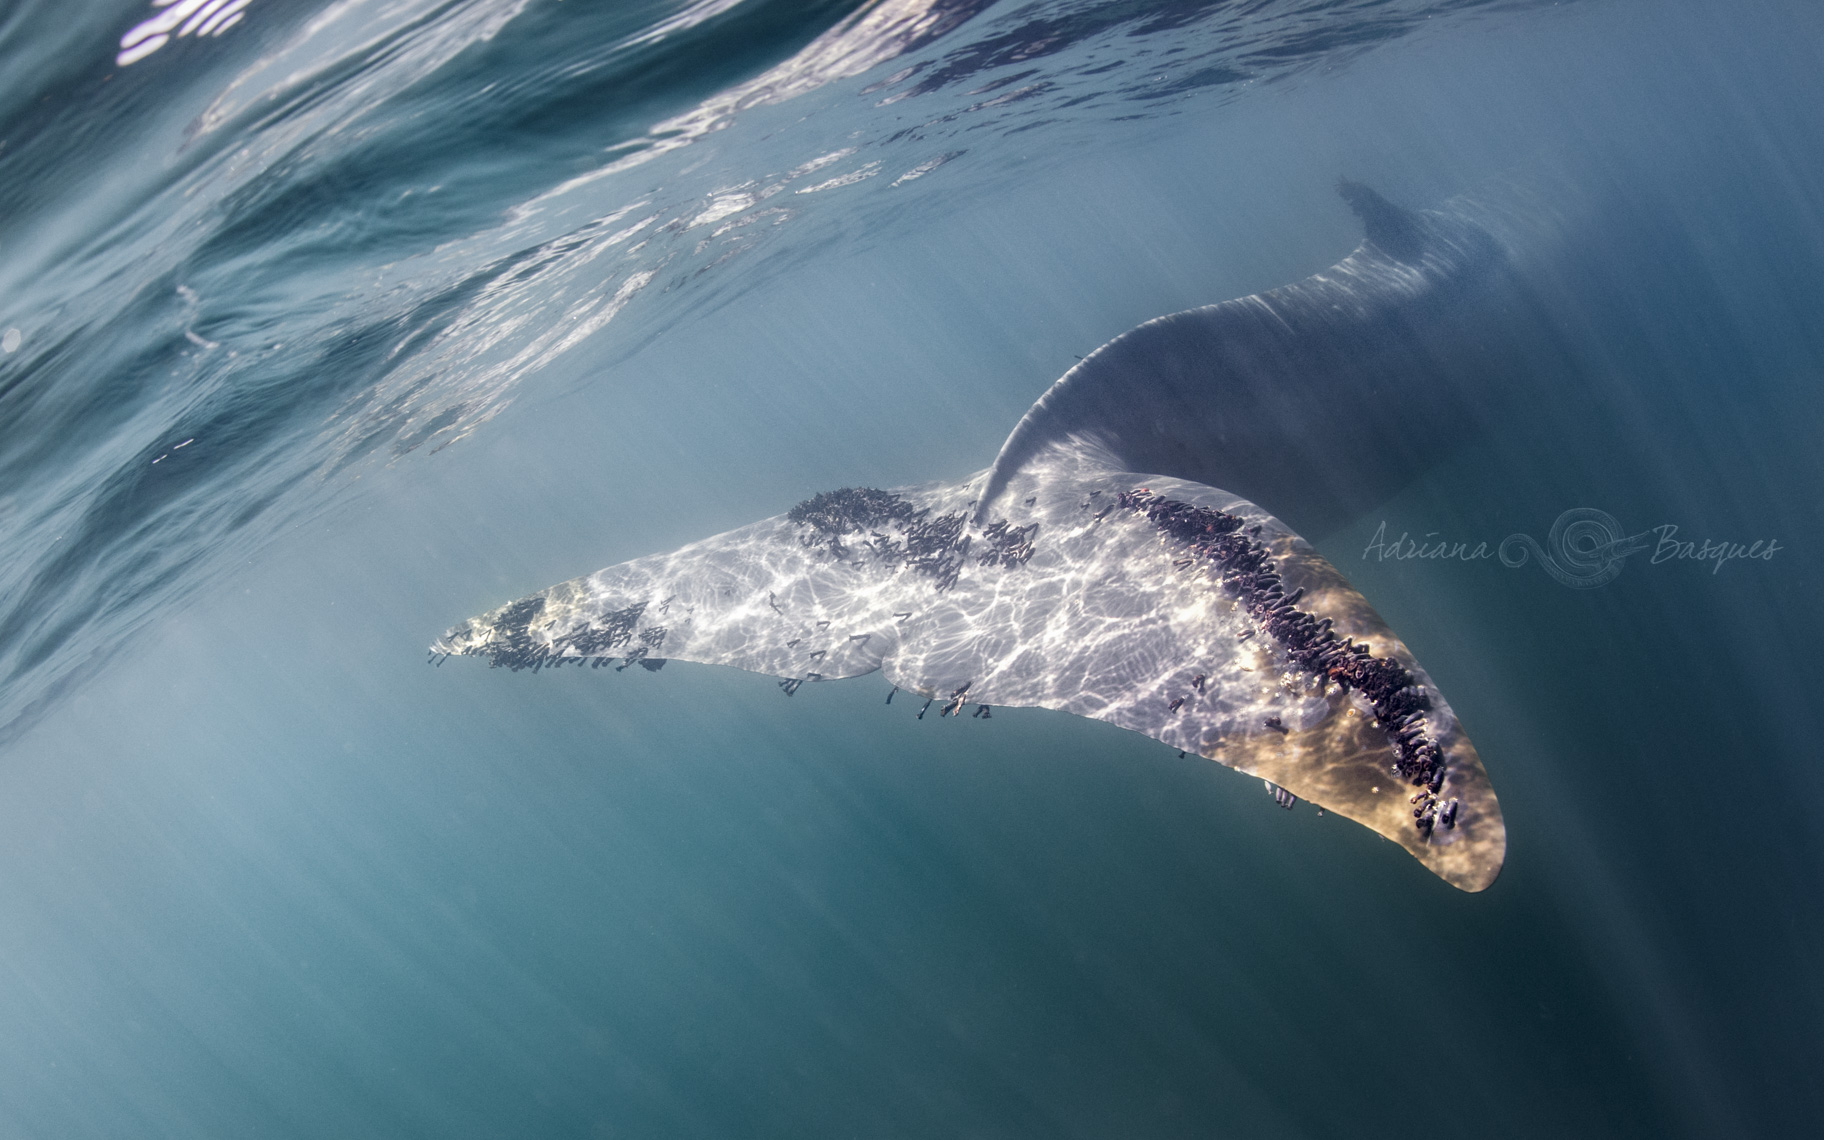 Fin whale tale